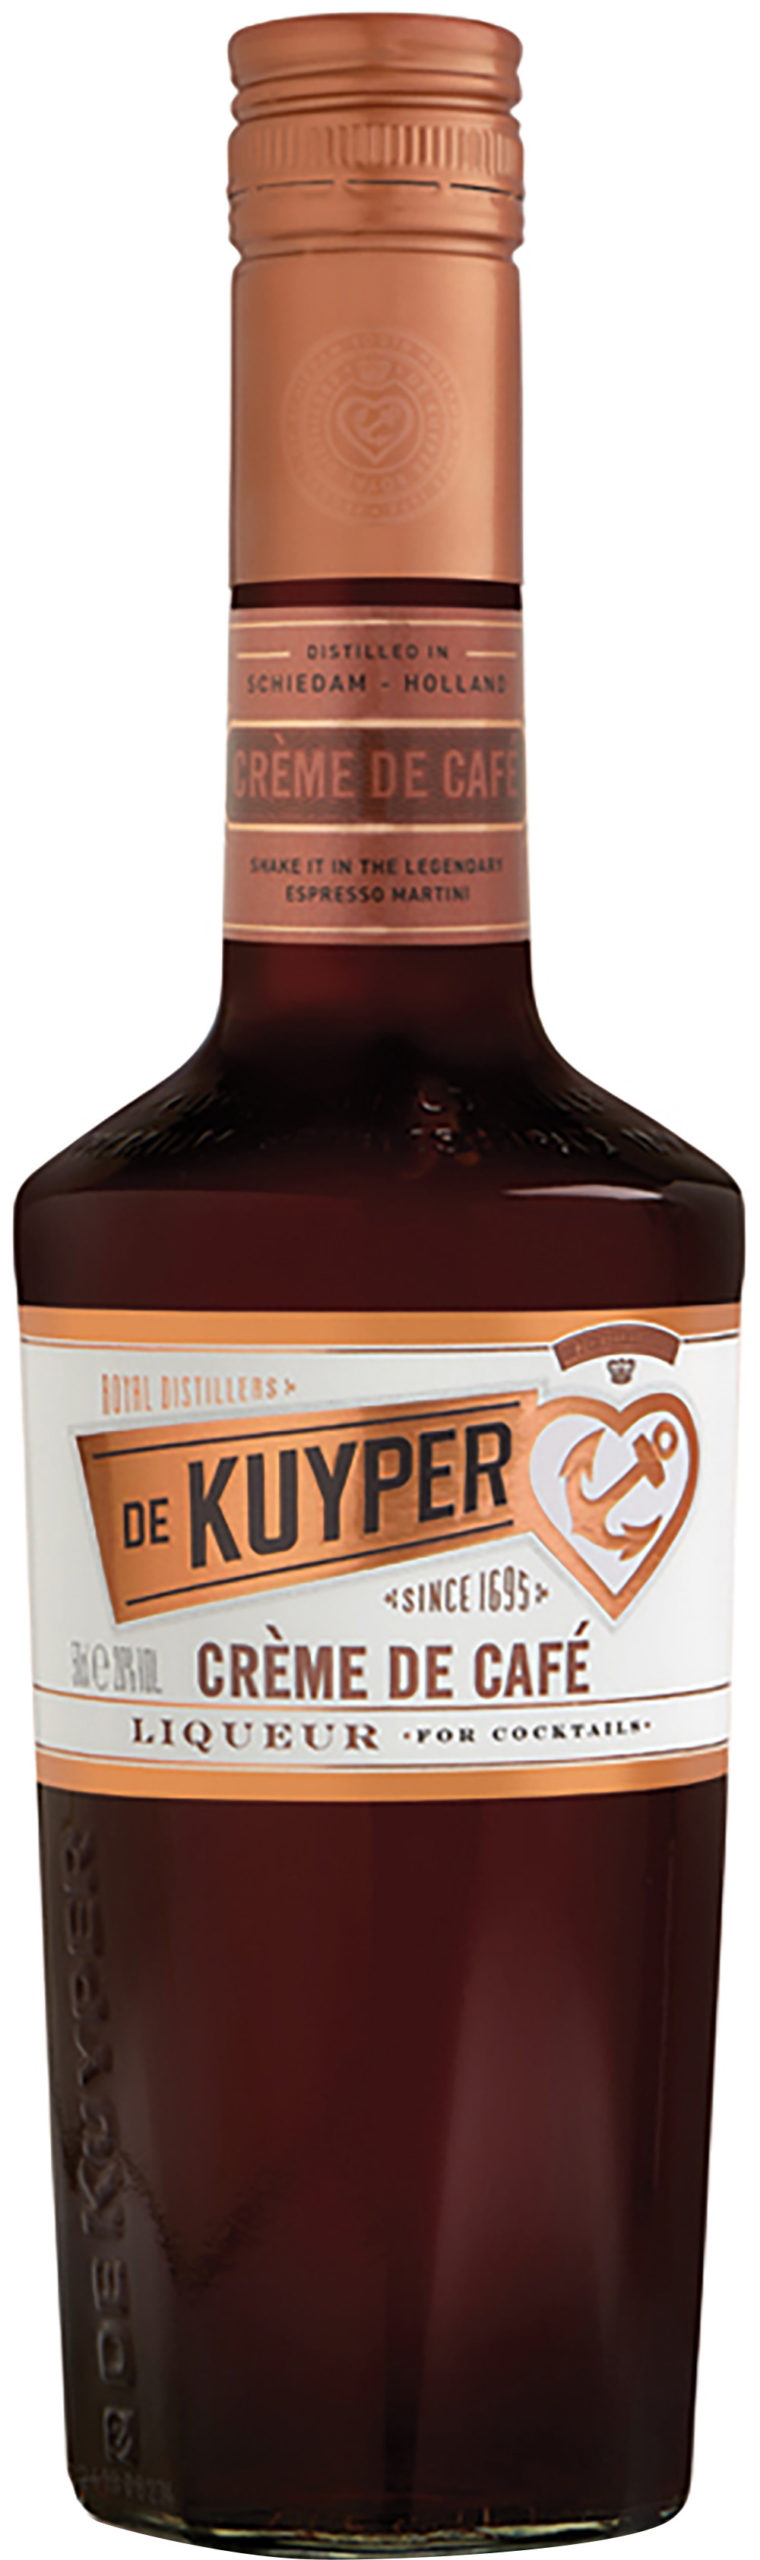 De Kuyper Crème de Cafe